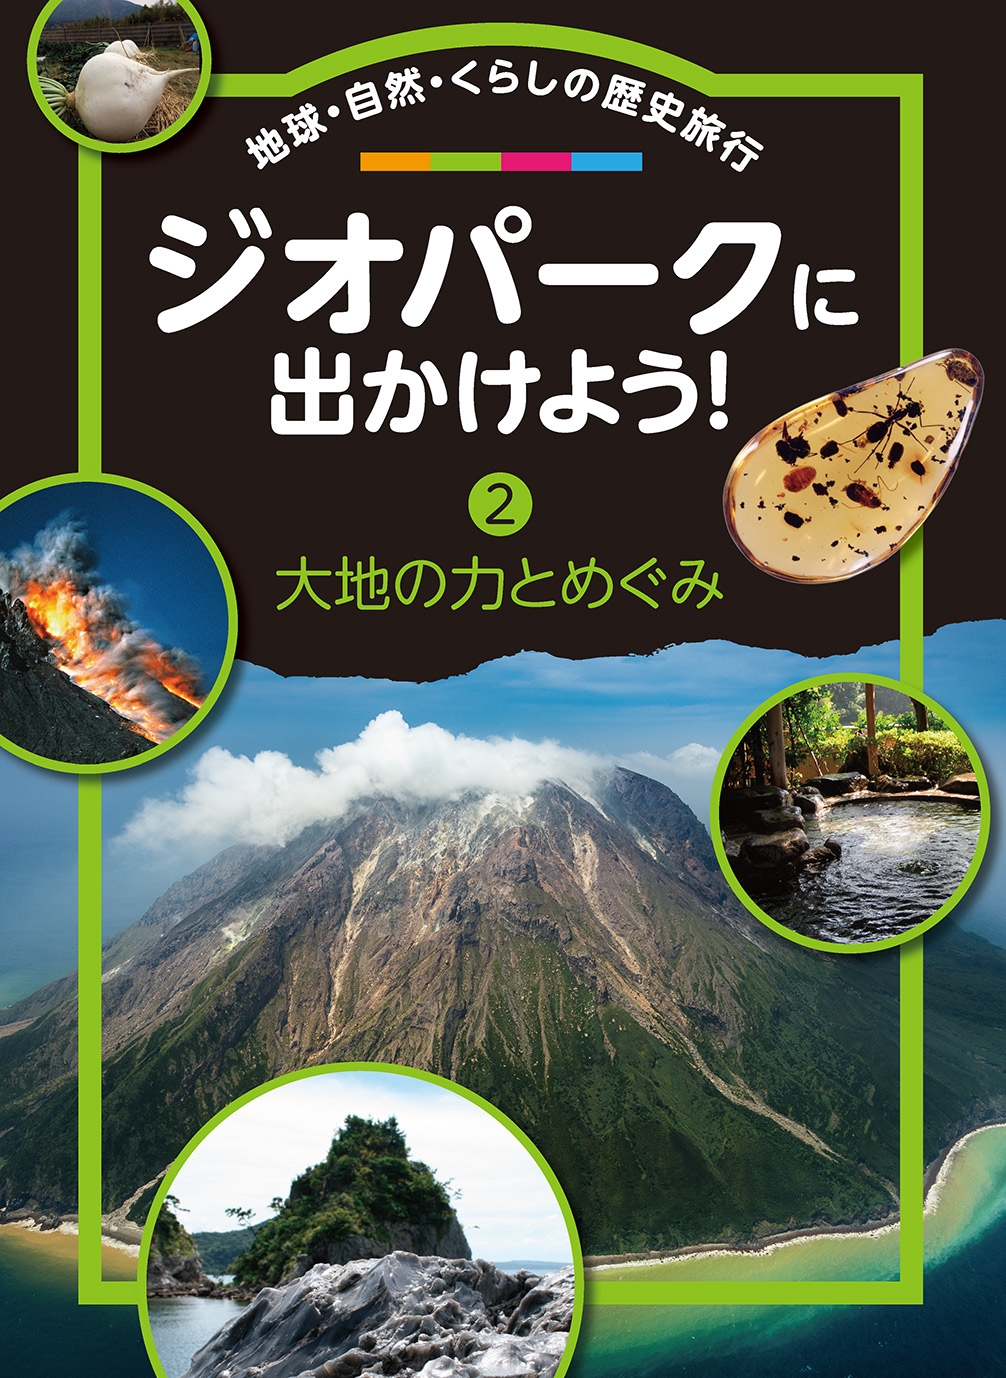 日本ジオパークネットワーク/ジオパークに出かけよう! (第2巻) 地球・自然・くらしの歴史旅行